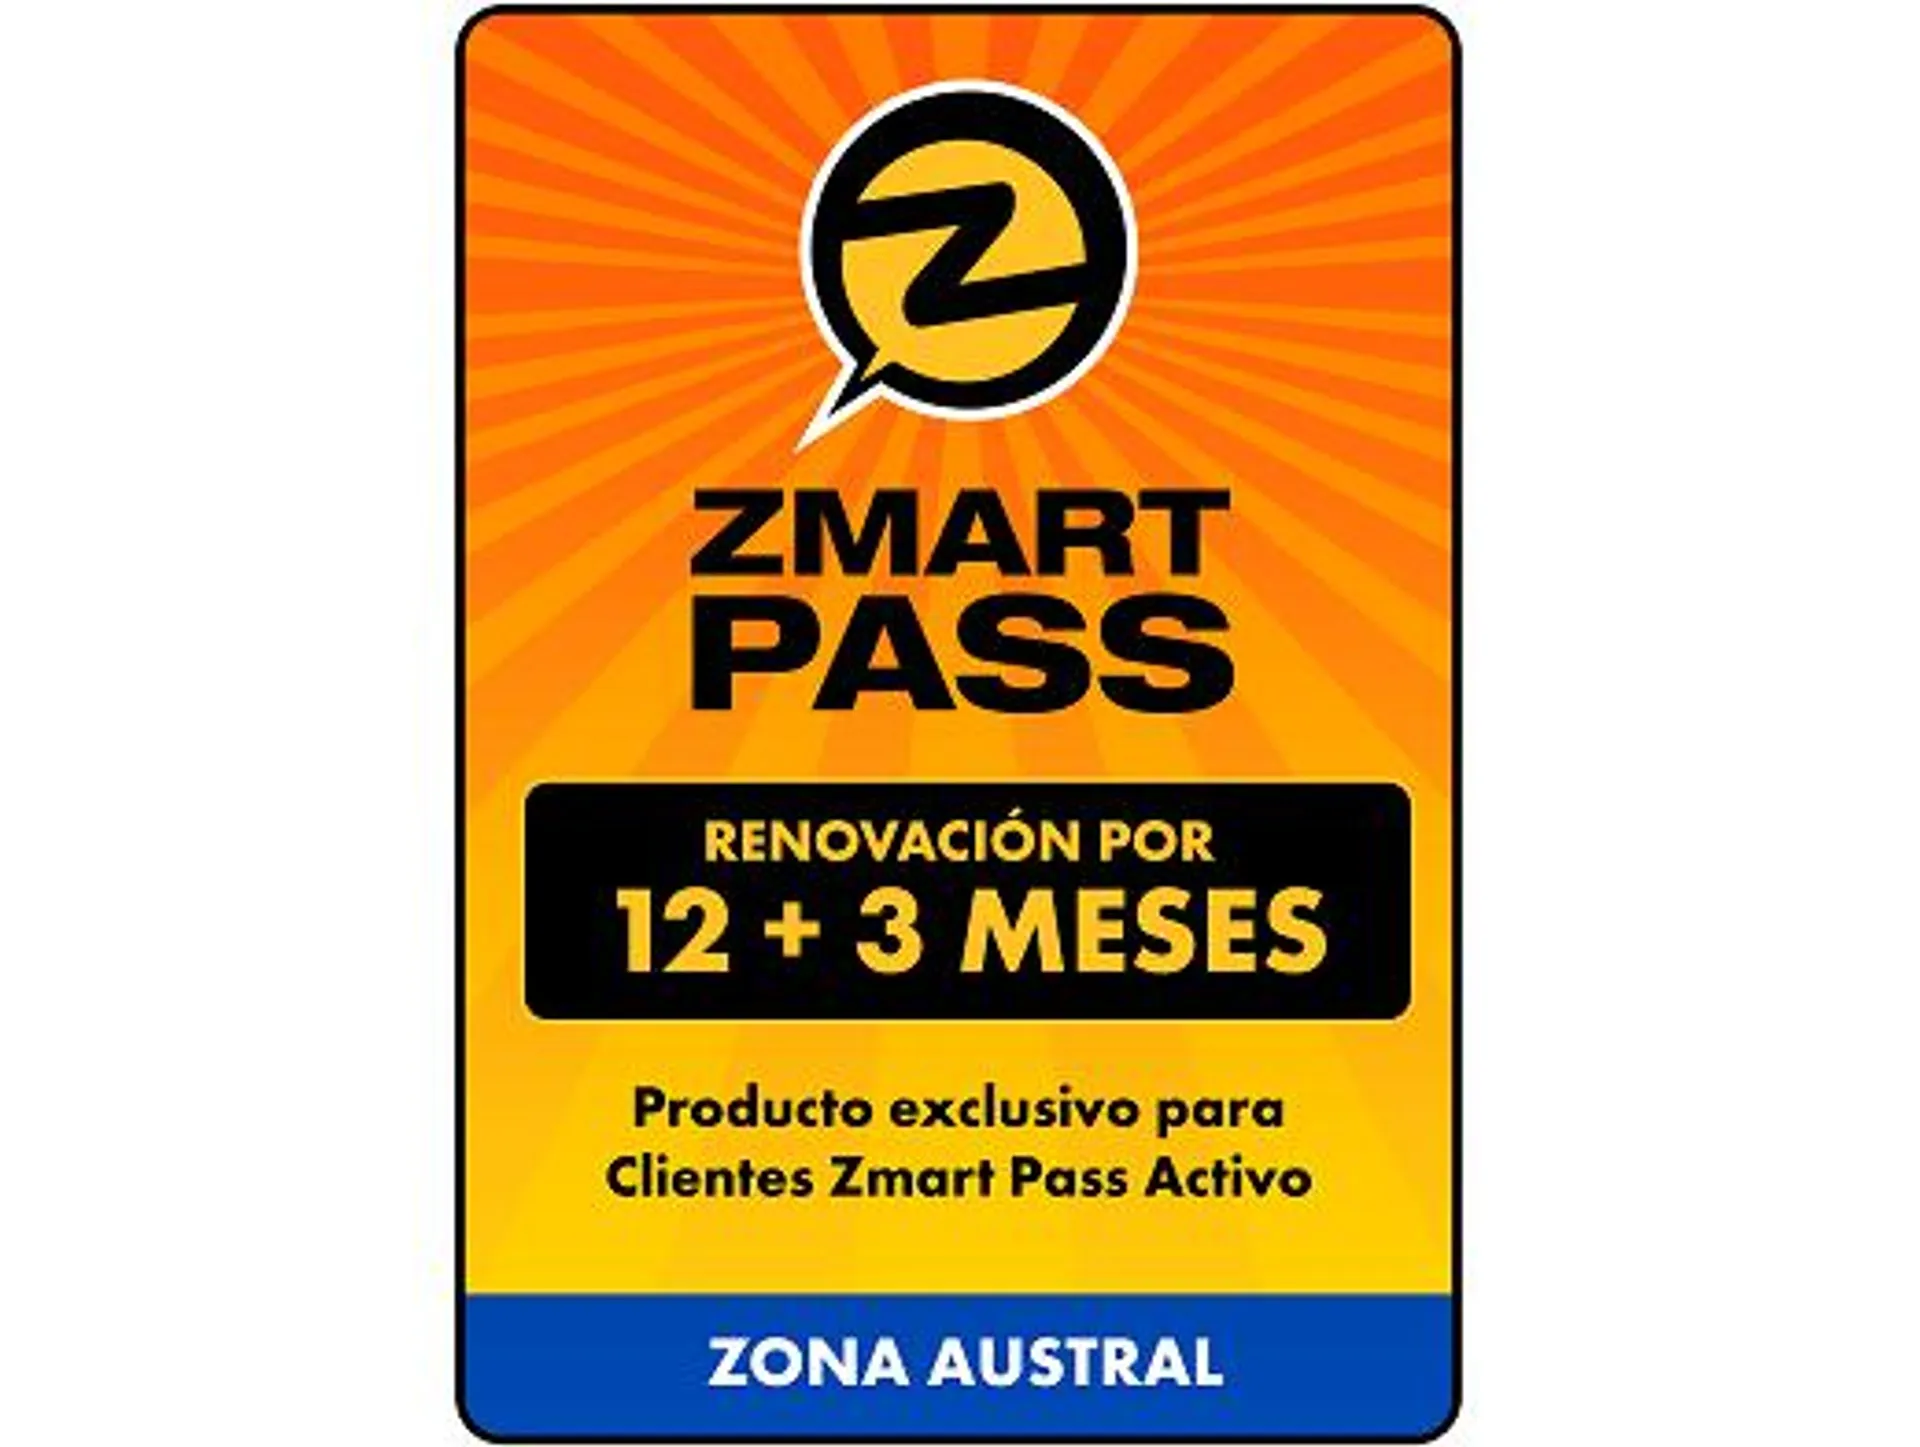 ZMART PASS: Renovación Zona Austral 12+3 meses